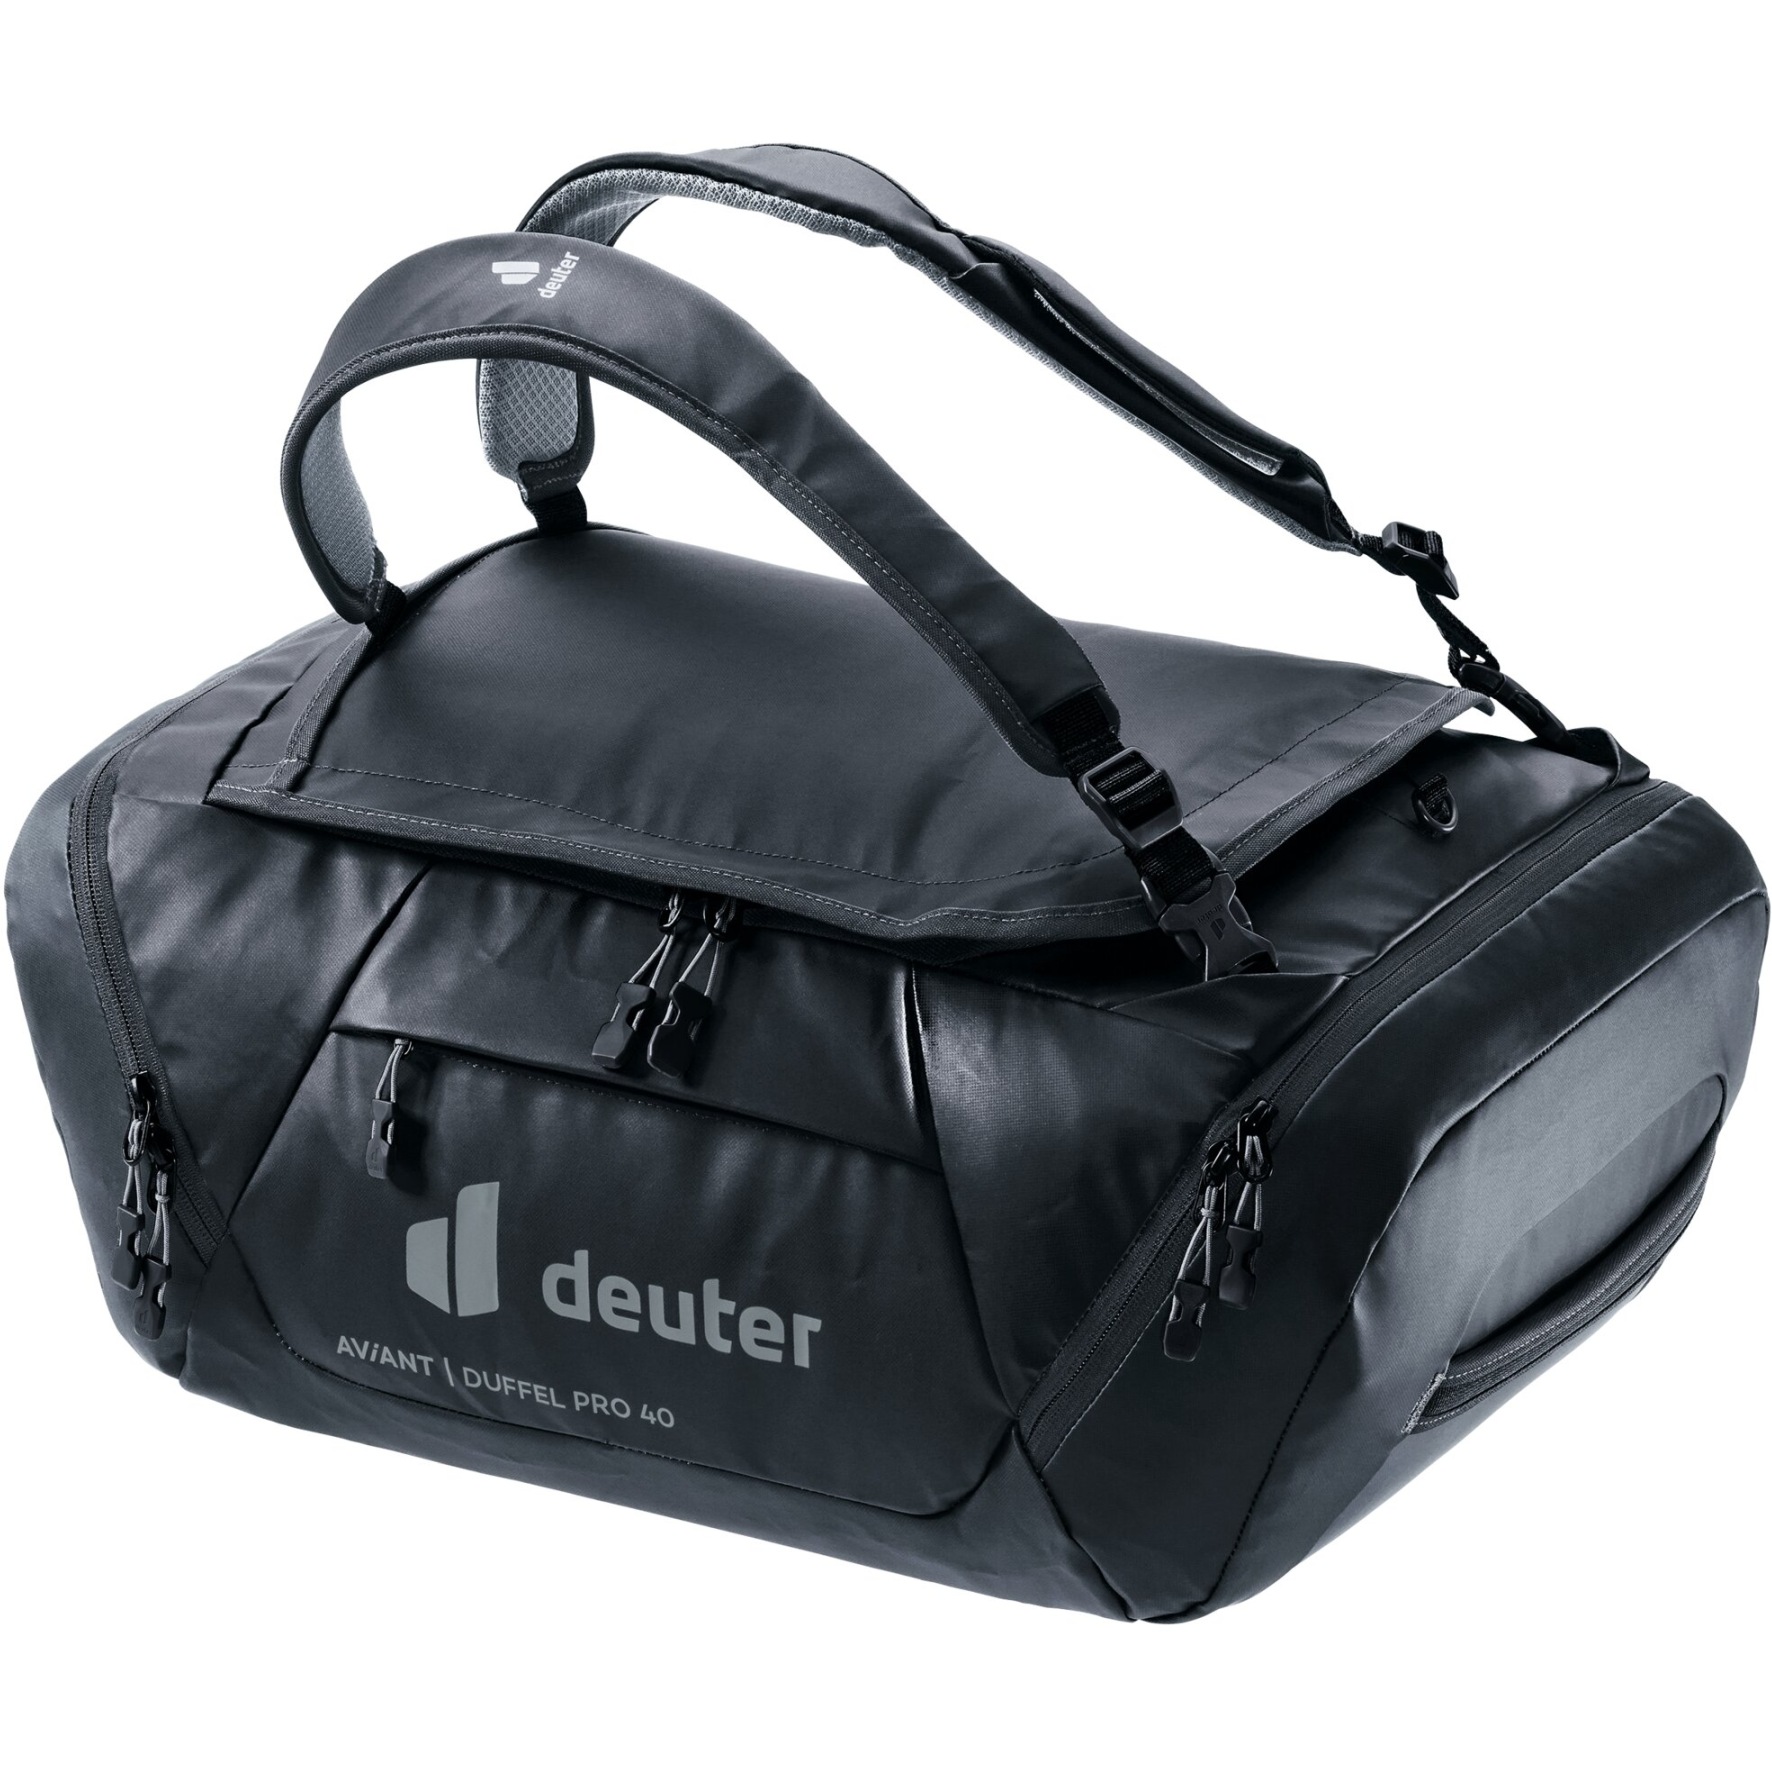 Productfoto van Deuter AViANT Duffel Pro 40 Sporttas - zwart